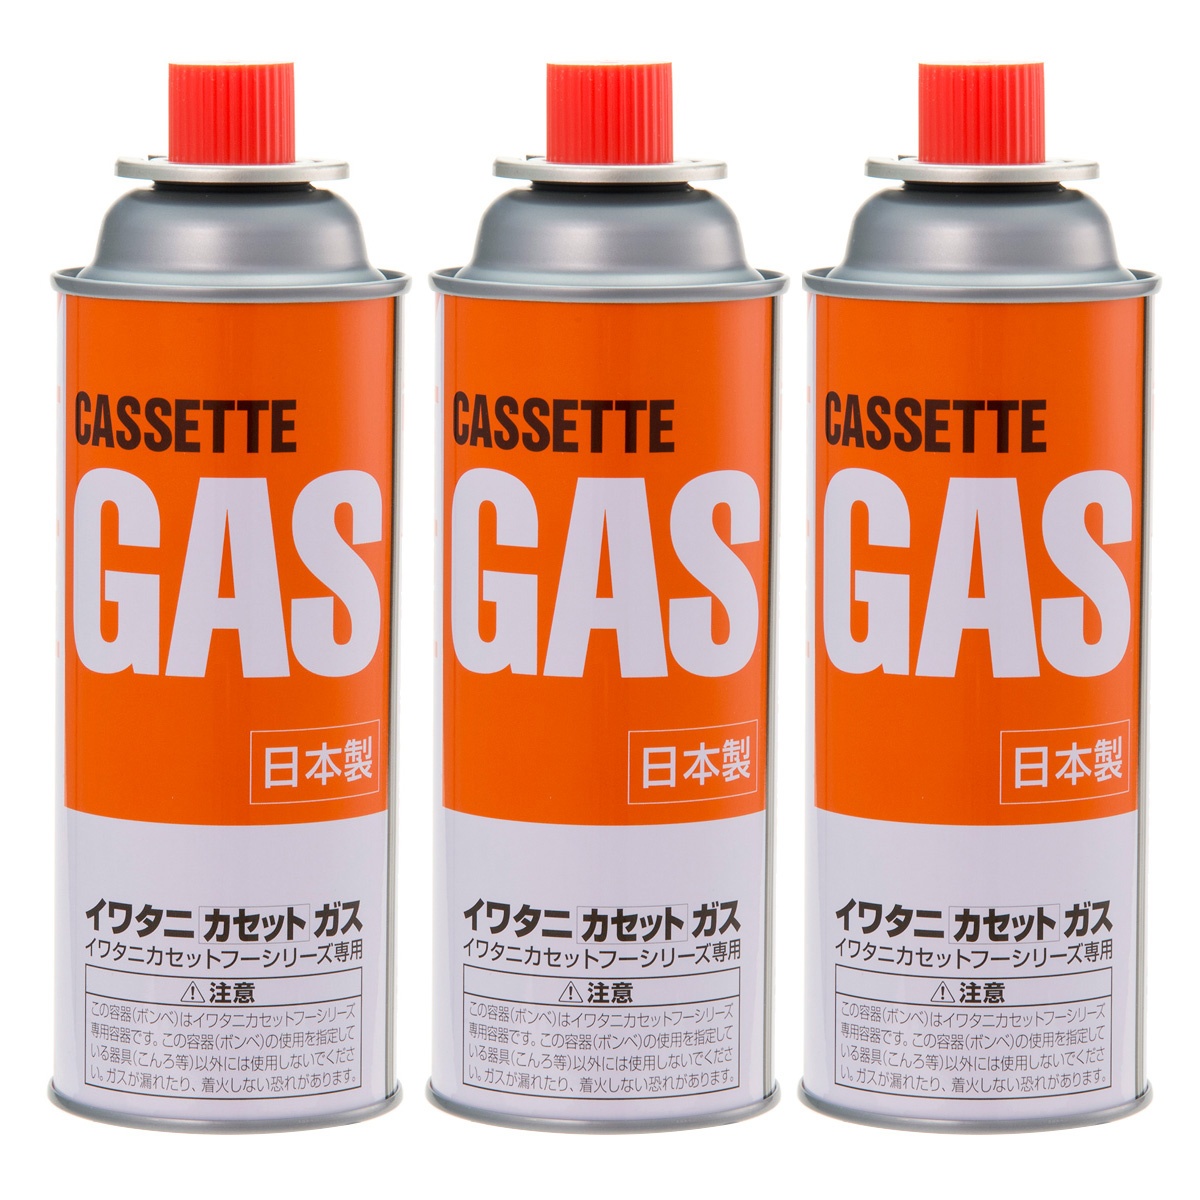 オープニング カセットボンベ 使用ガス:LPG 岩谷産業 液化ブタン オレンジ カセットガス CB-250-OR